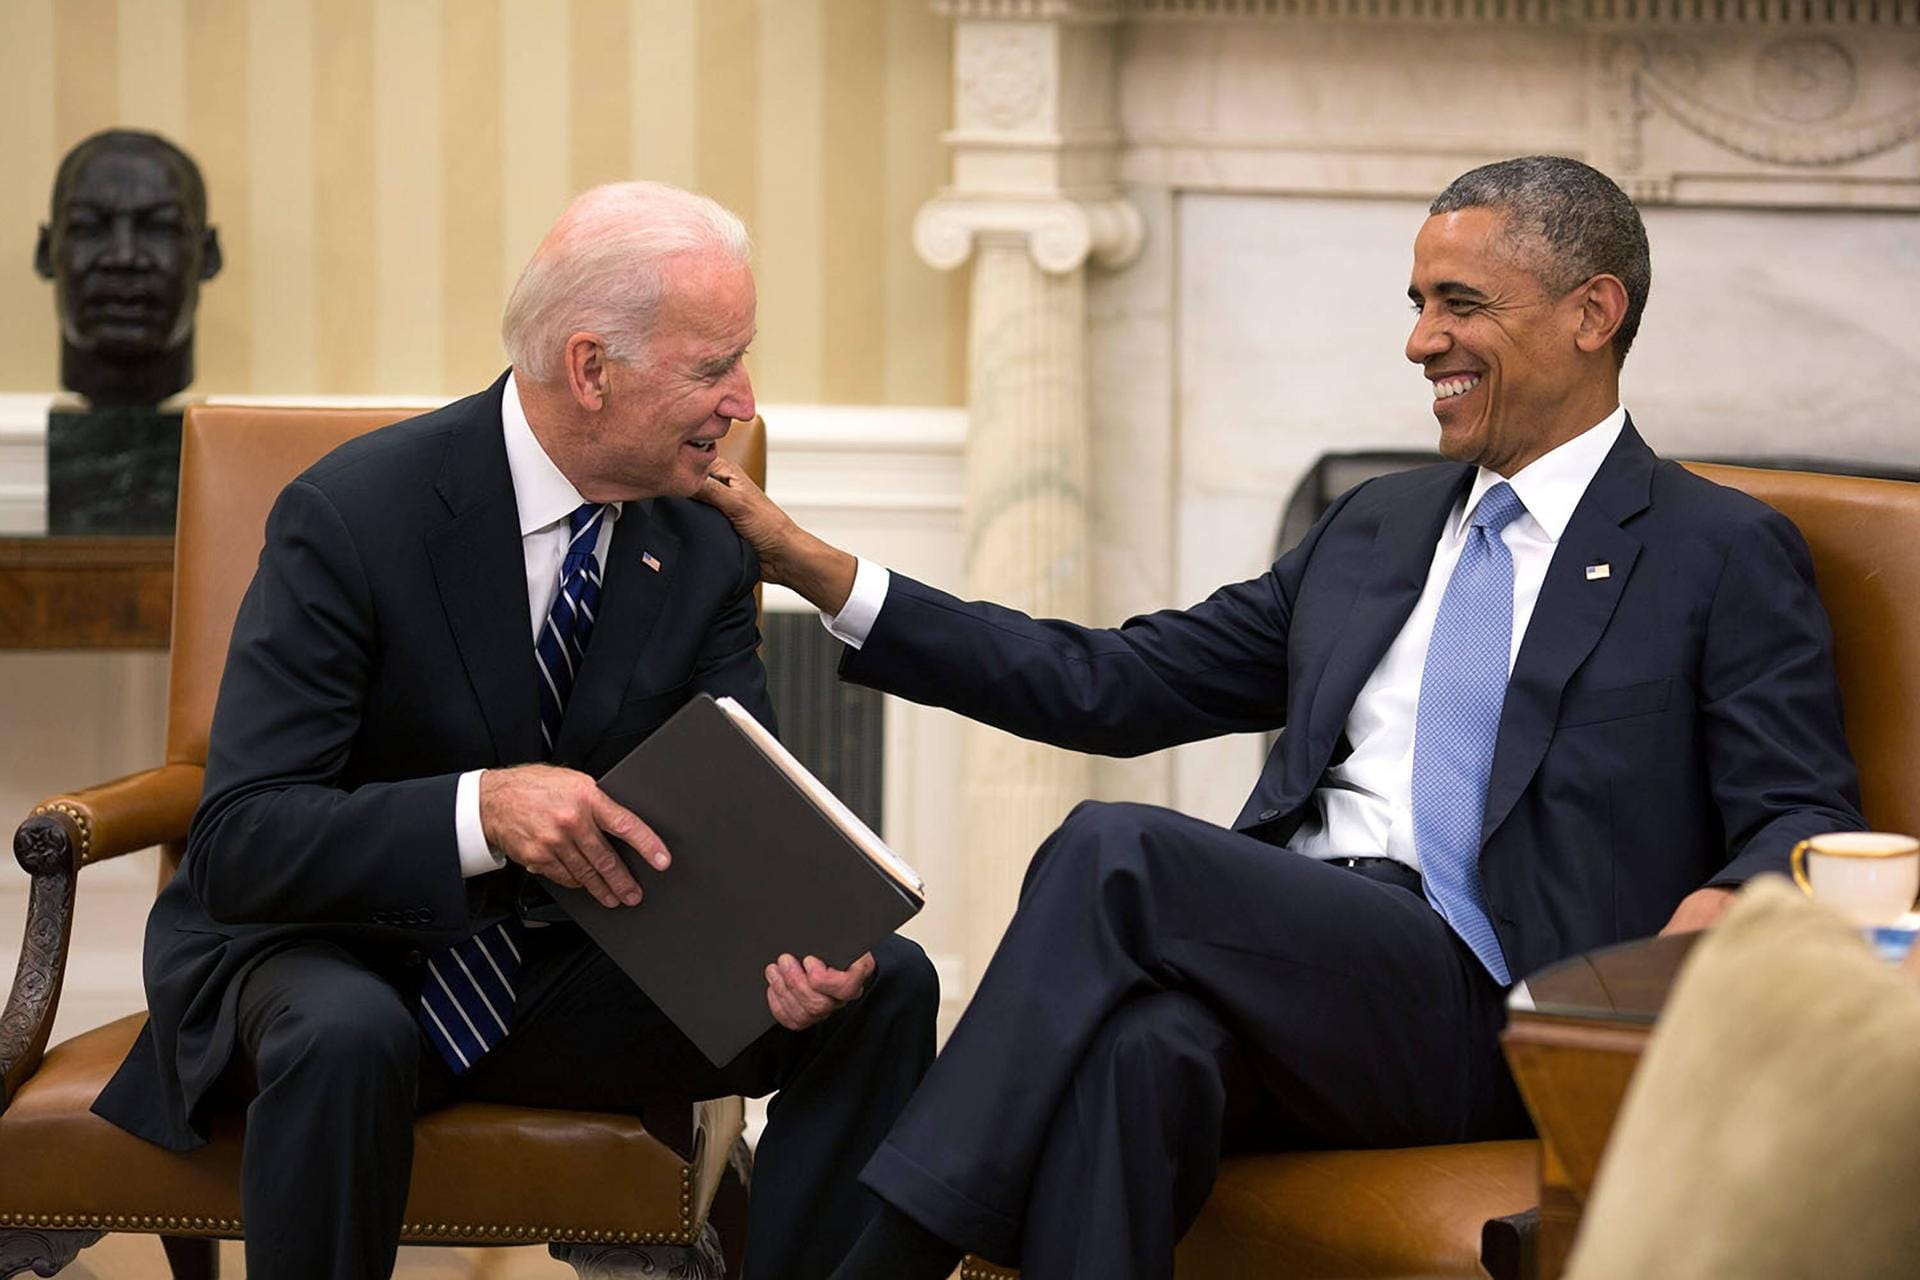 Nachdem Barack Obama ihn im August 2008 als seinen "Running Mate" gewählt hatte, trat Biden am 20. Januar 2009 das Amt des 47. Vizepräsidenten der USA an. Er begleitete Obama durch beide Amtsperioden.